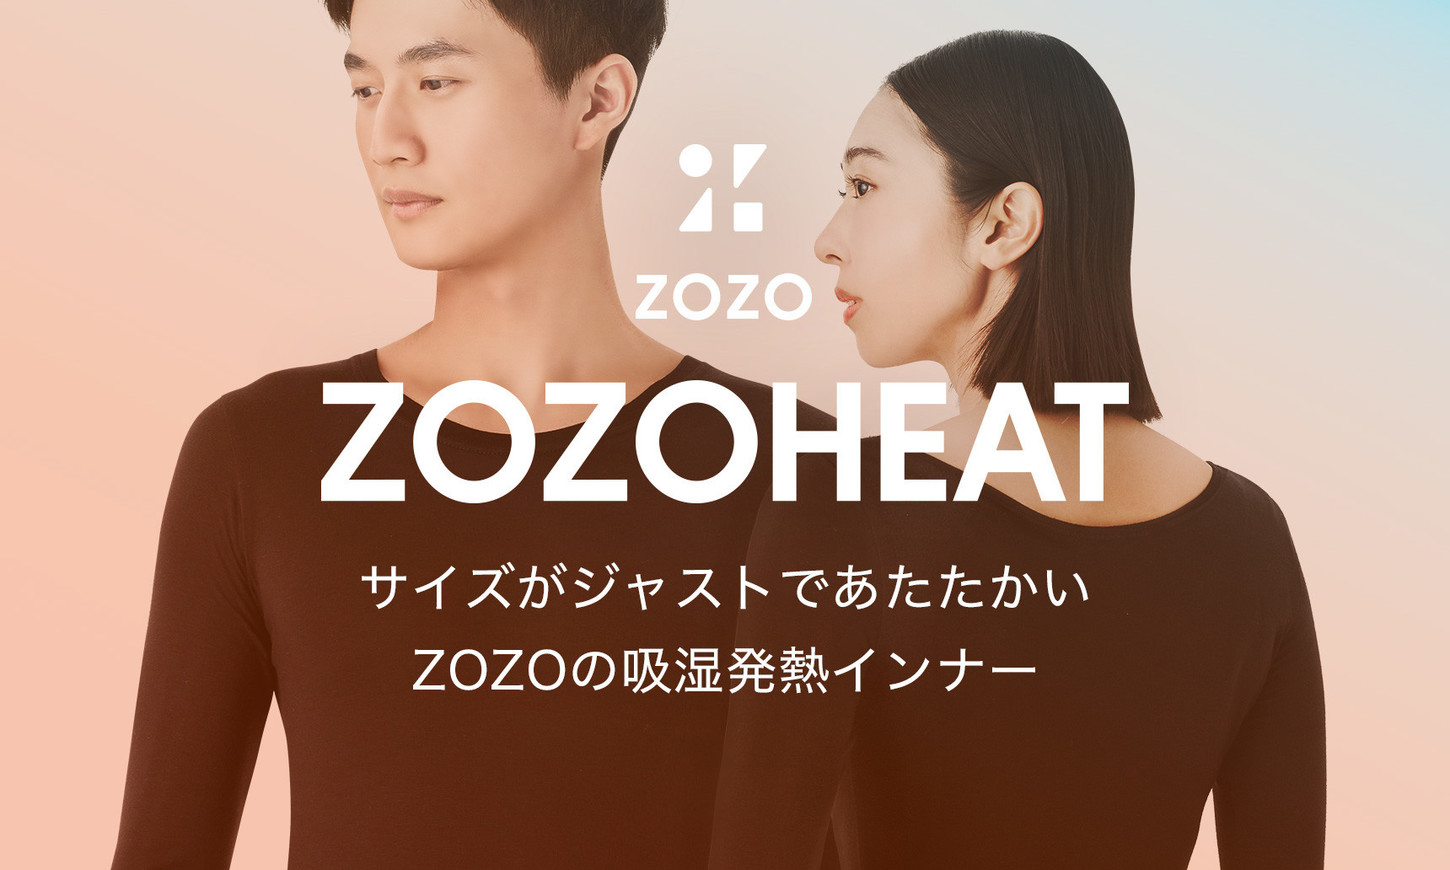 拥有超过 1,000 种尺寸选择的功能内搭 ZOZOHEAT 正式发布